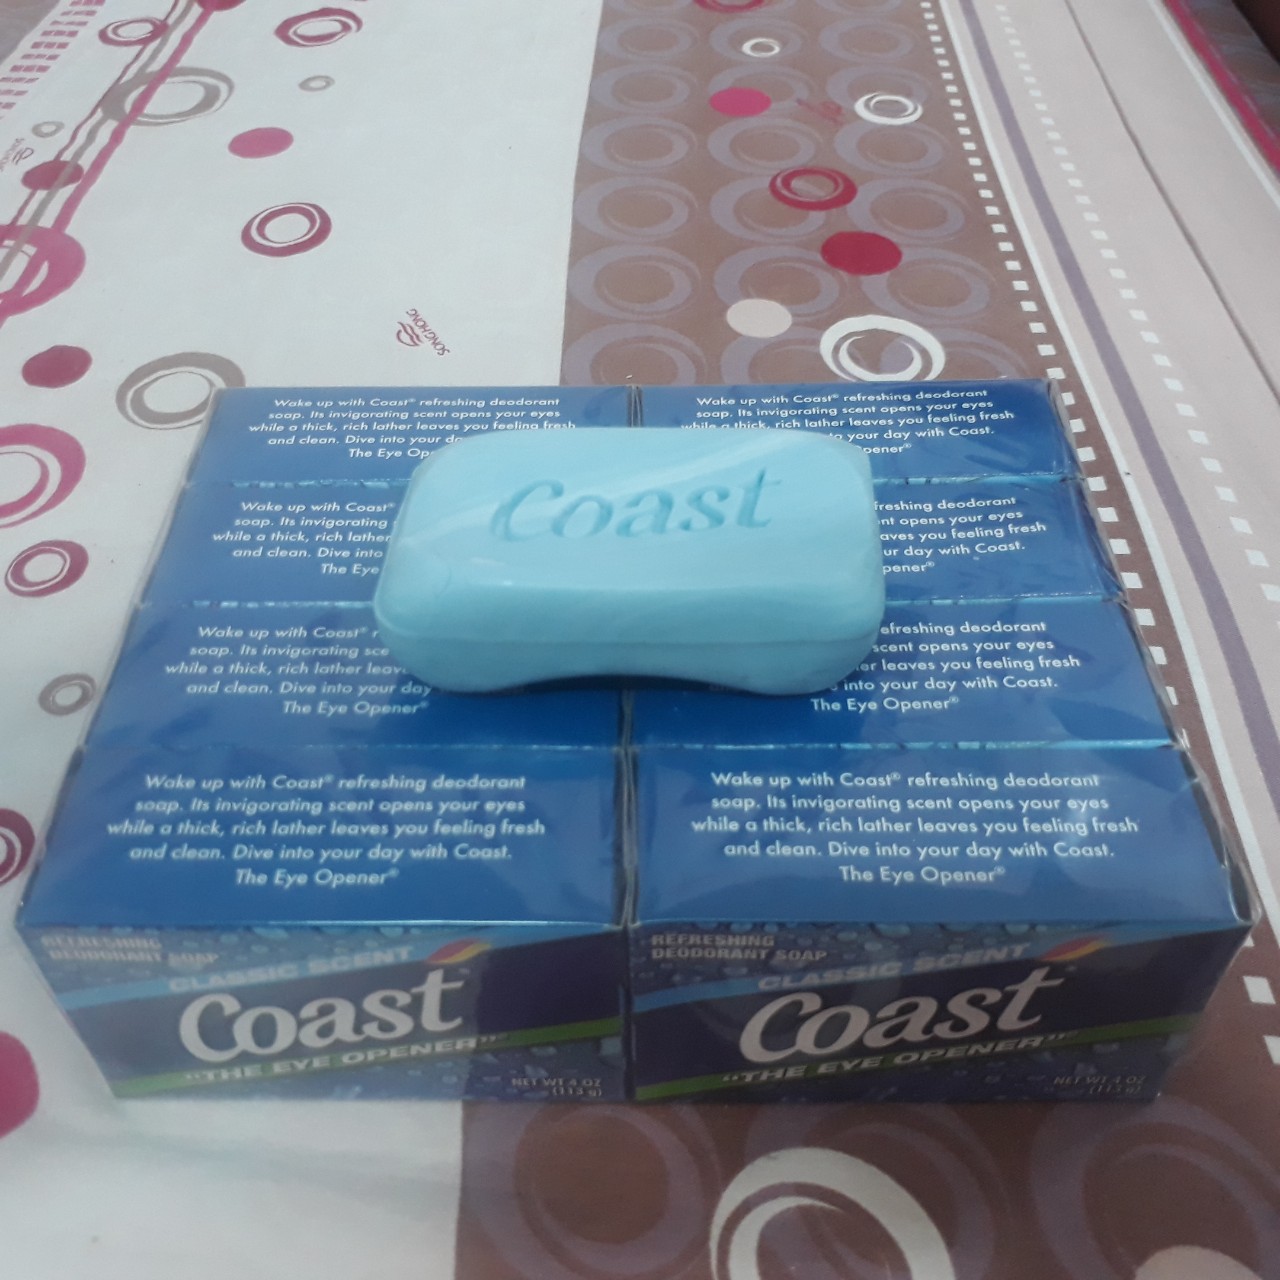 Xà Bông Cục Coast Classic Scent Refreshing Deodorant Lốc 8 X 113g